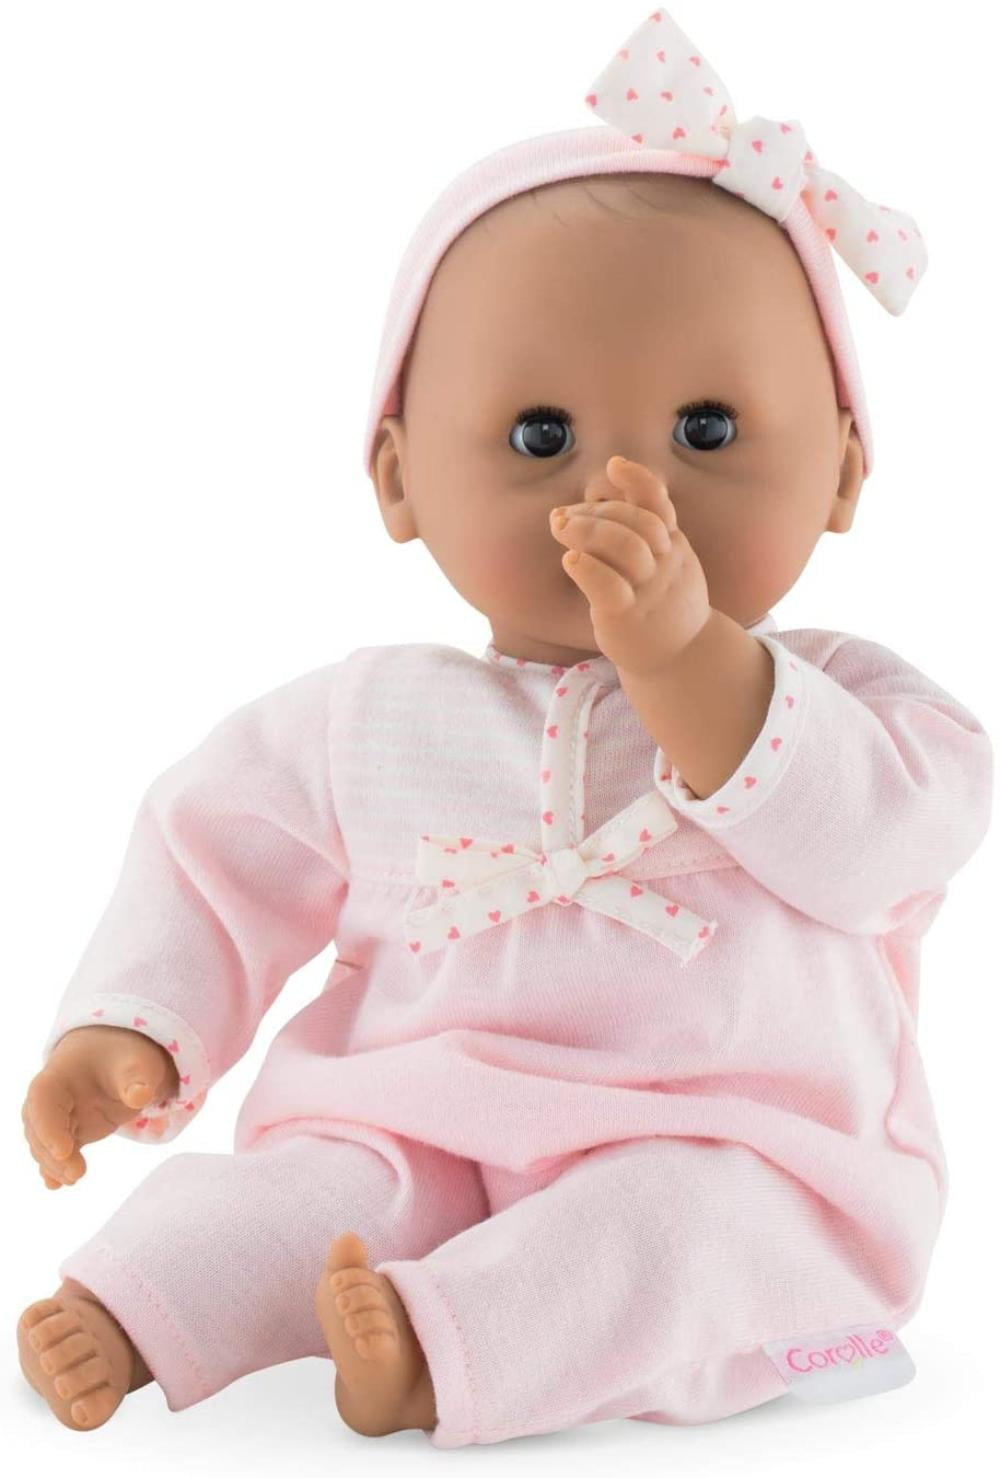 Corolle Mon Premier Poupon 12 Pink Dress Toy Baby Doll 